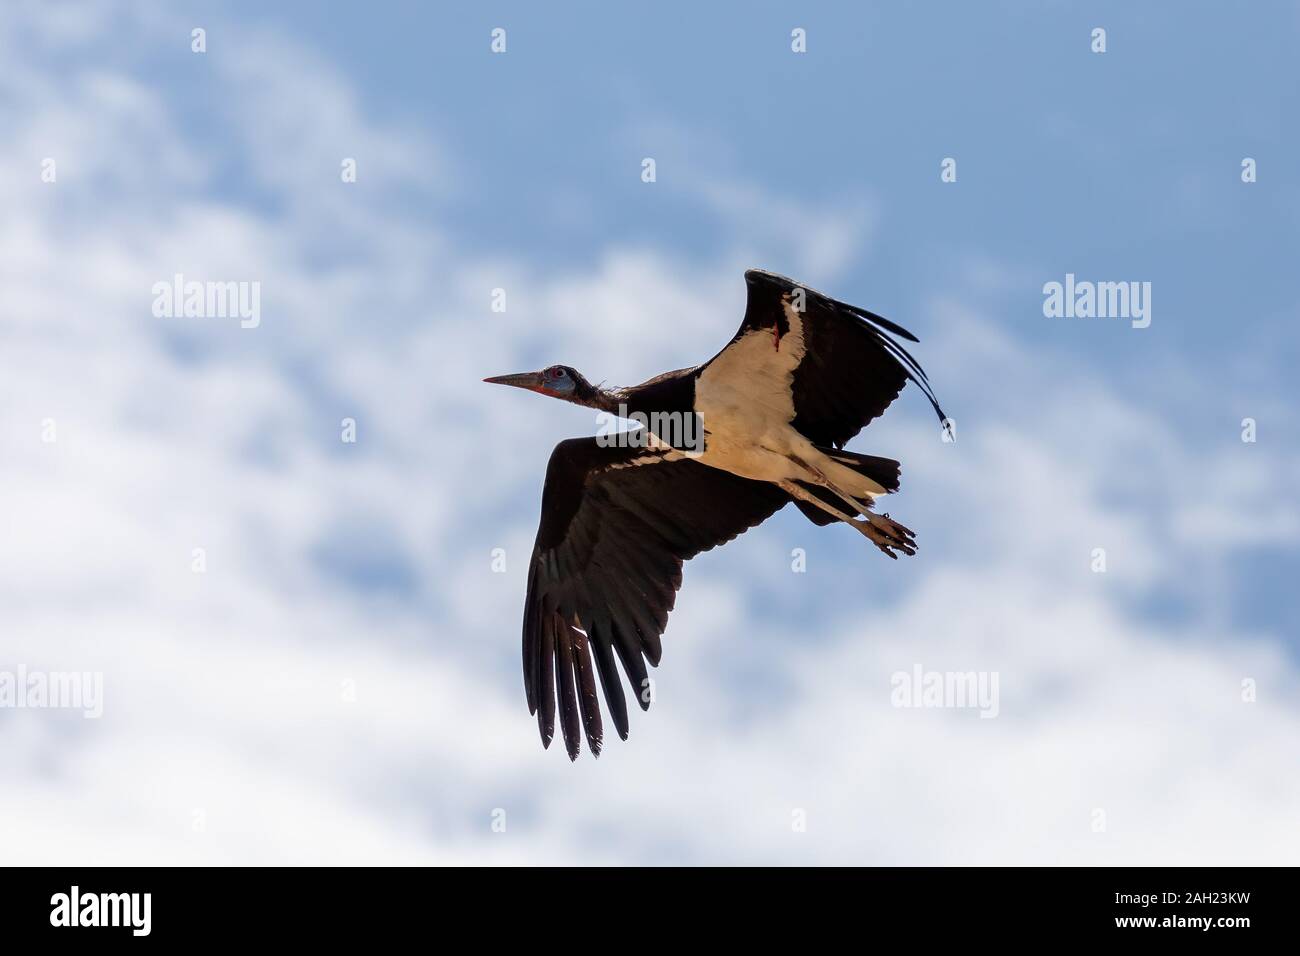 À ventre blanc oiseau volant Stork Ciconia abdimii, contre le fond de ciel bleu. La faune du sud de l'Ethiopie Banque D'Images